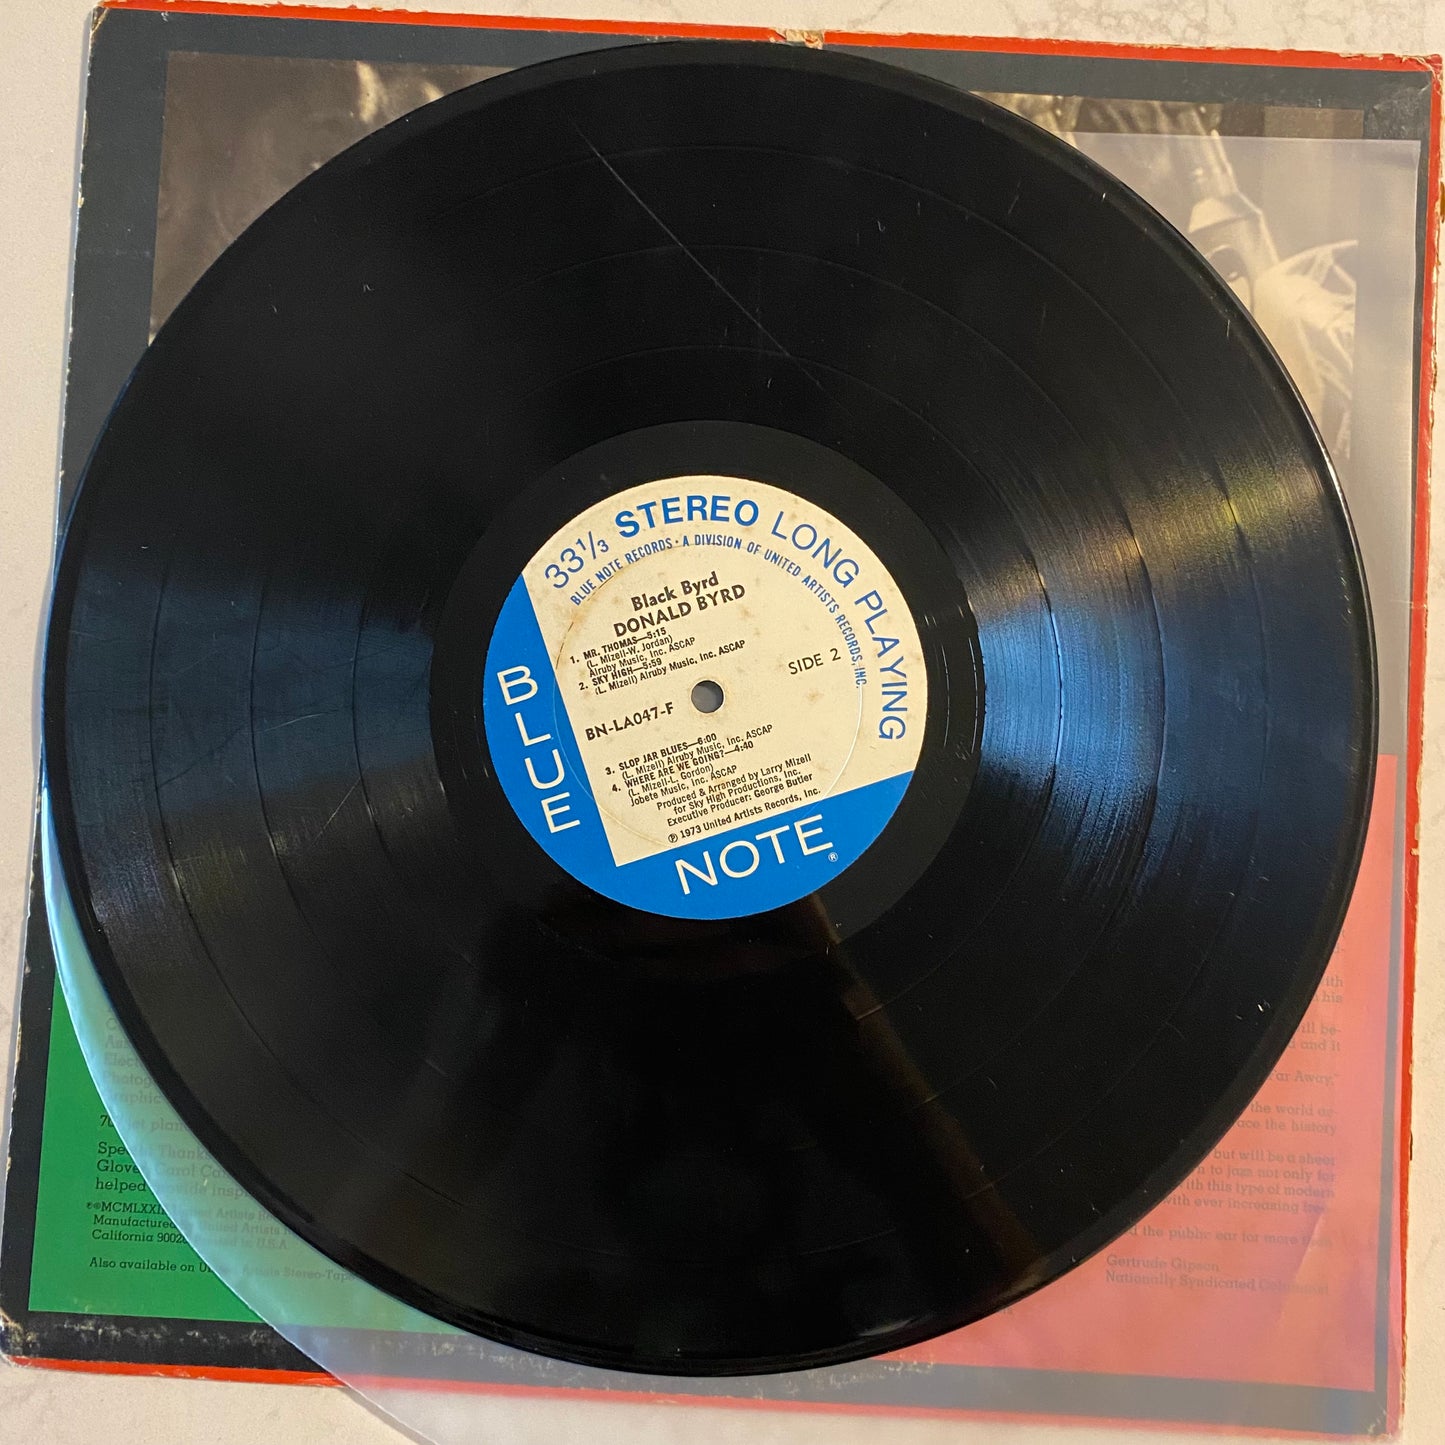 Donald Byrd - Black Byrd (LP, Album, All)